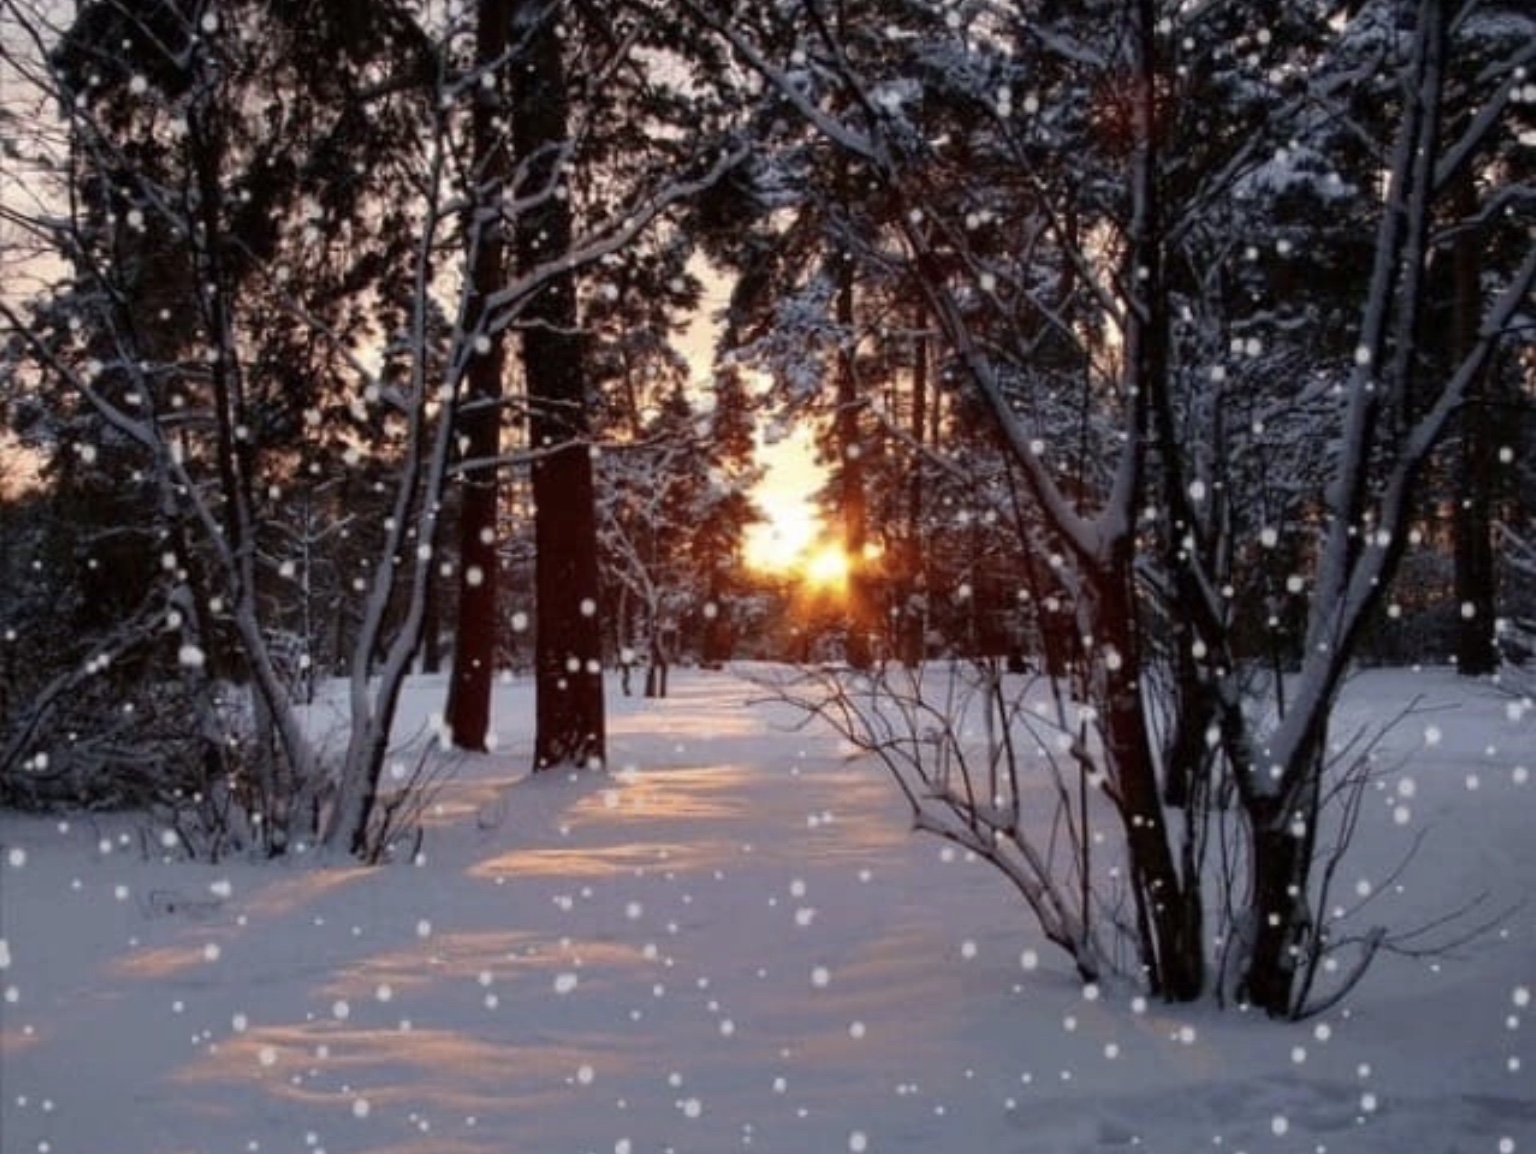 Найти снег падает. Зимой в лесу. Снег идет. Зимний снегопад. Зимний пейзаж.